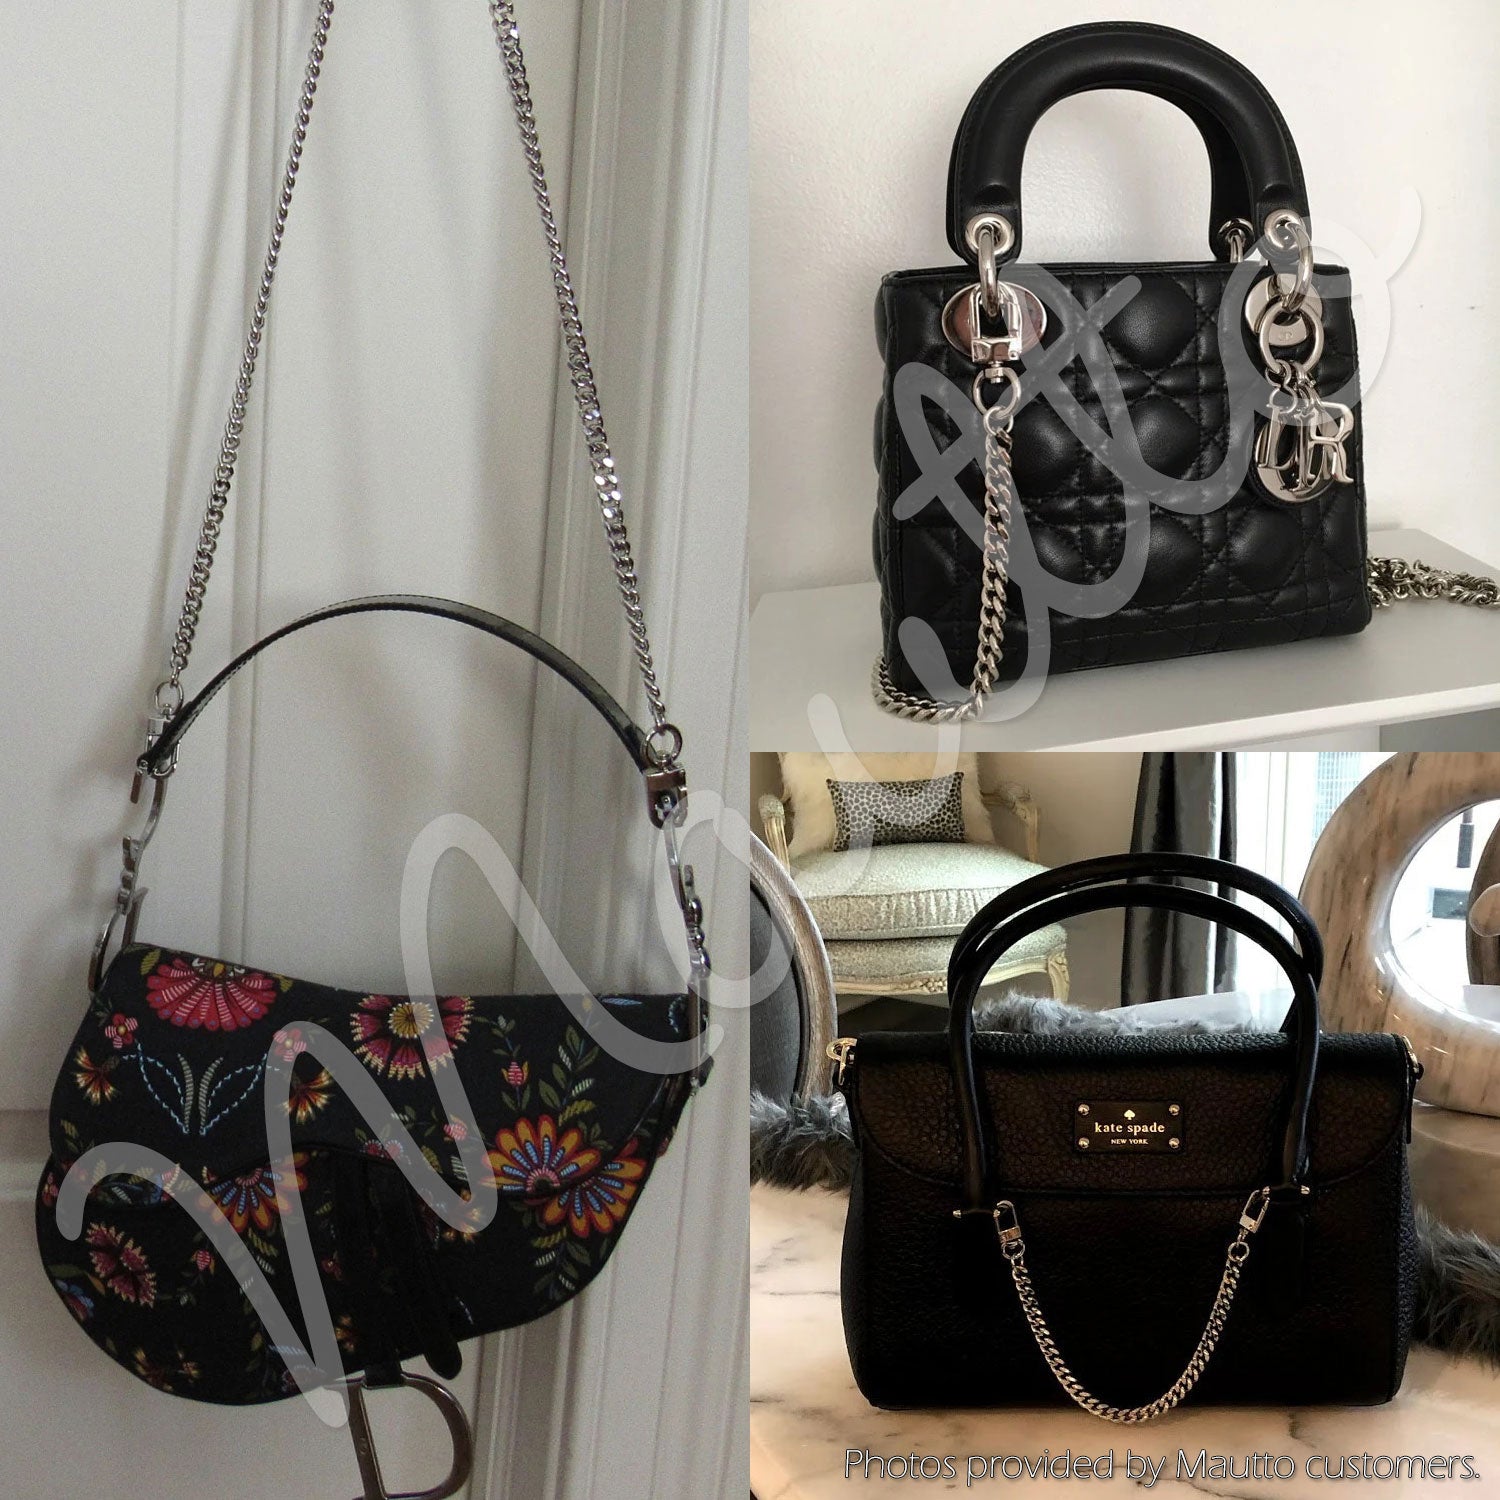 Silver-tone Chain Straps for Luxury/Designer Handbags, Purses & More –  Mautto